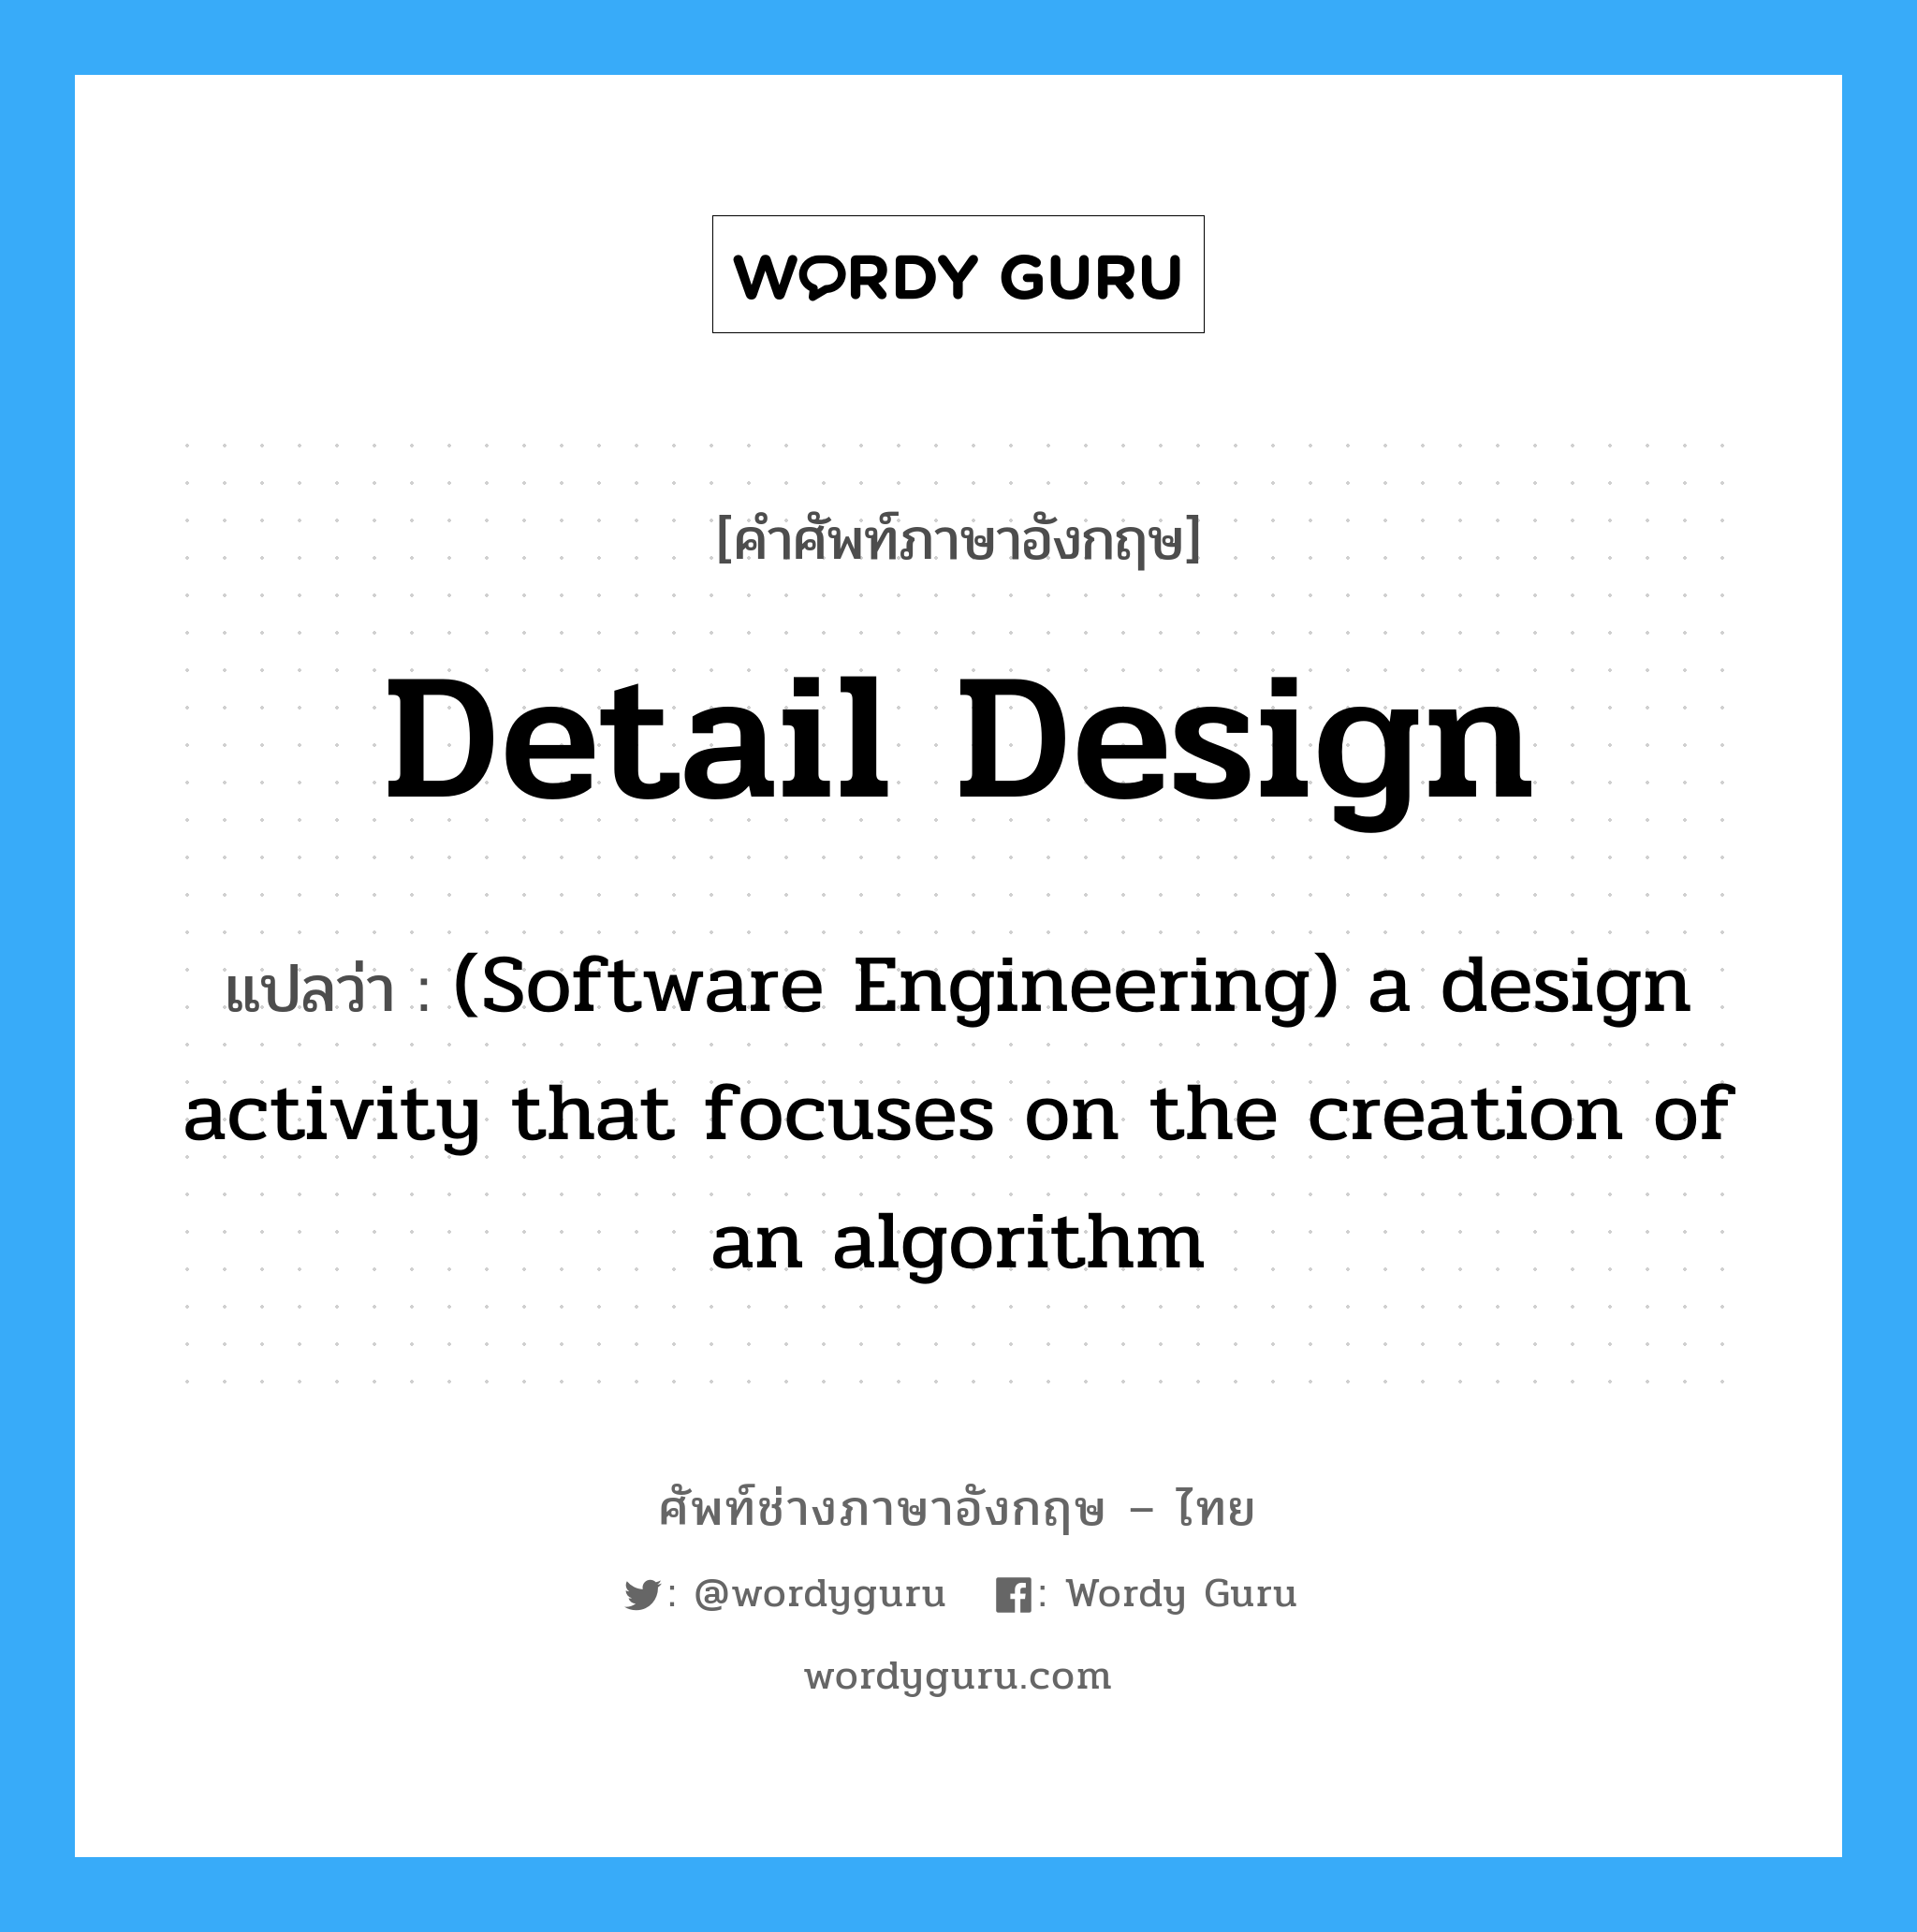 Detail design แปลว่า?, คำศัพท์ช่างภาษาอังกฤษ - ไทย Detail design คำศัพท์ภาษาอังกฤษ Detail design แปลว่า (Software Engineering) a design activity that focuses on the creation of an algorithm